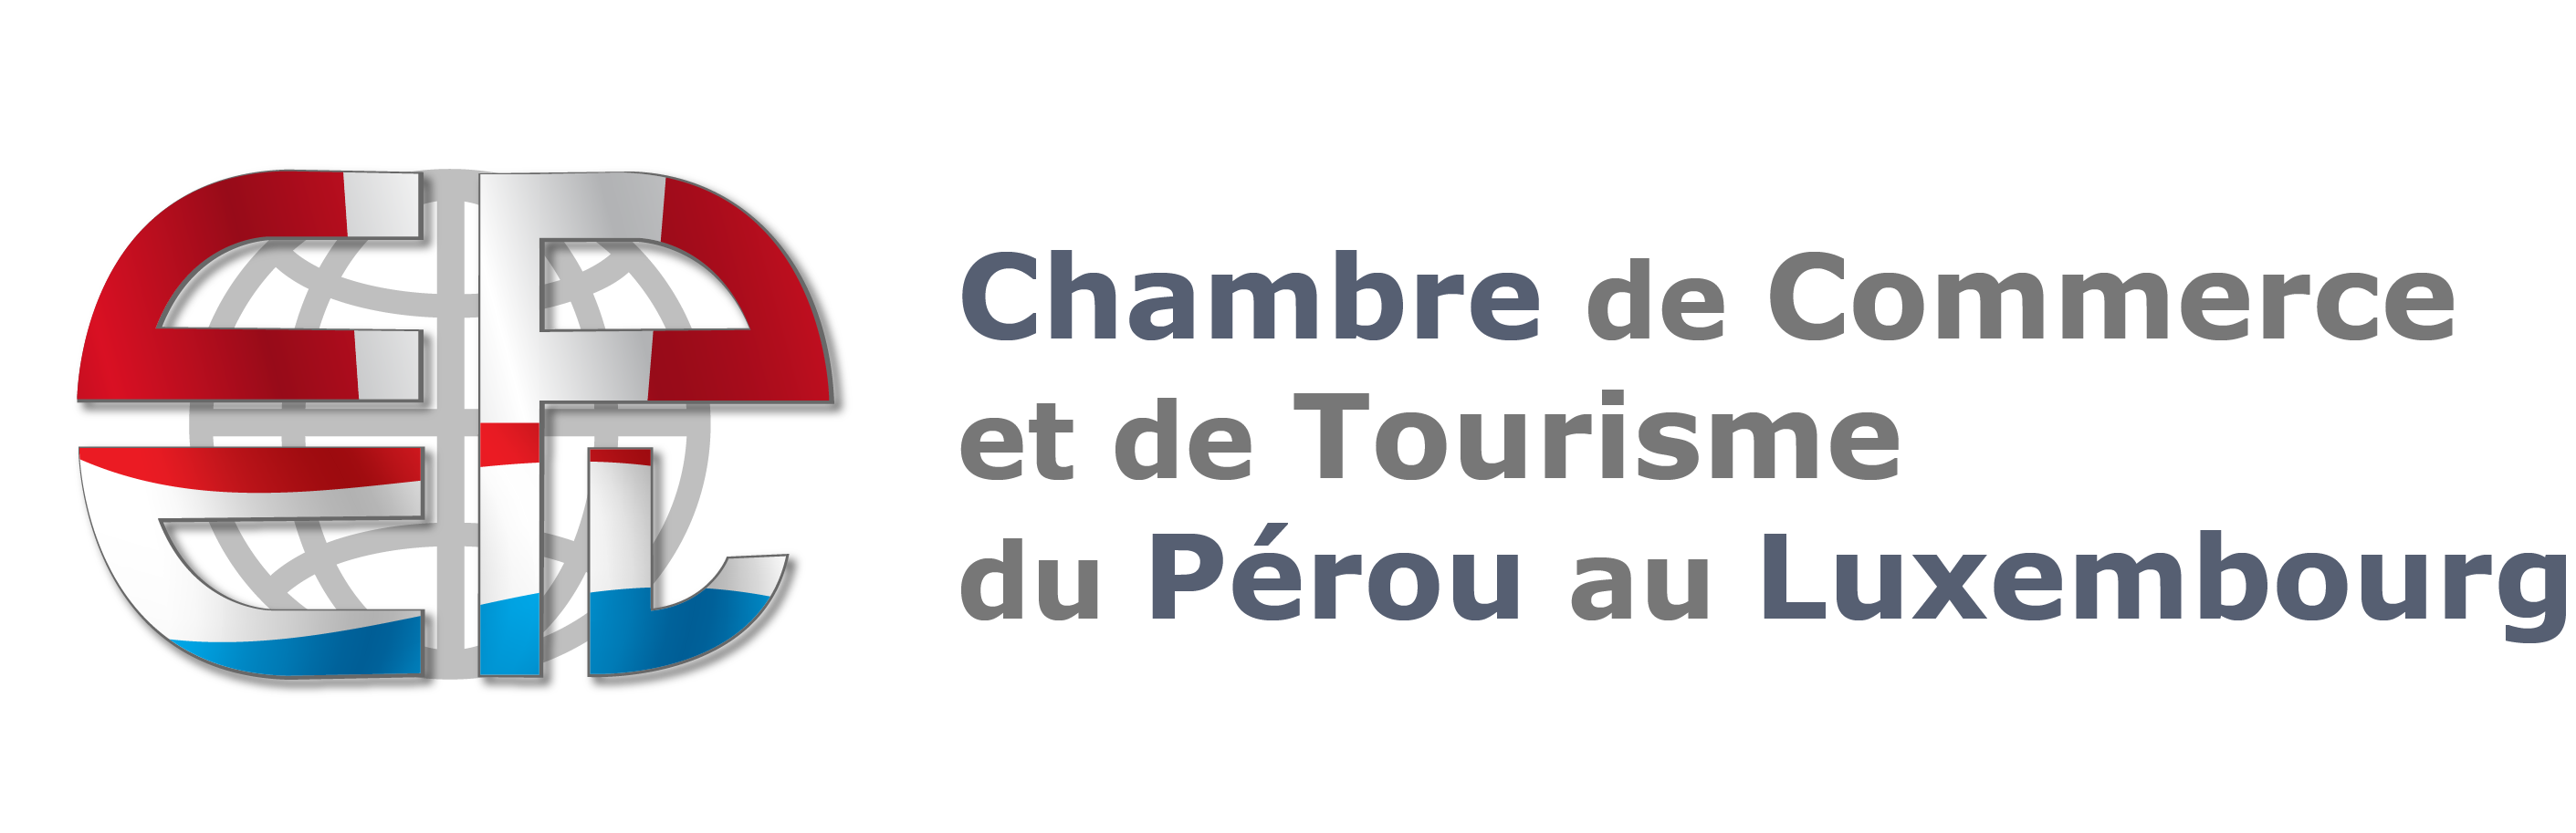 Chambre de Commerce et de Tourisme du Pérou au Luxembourg • Cámara de Comercio y de Turismo de Perú en Luxemburgo • CCTPL